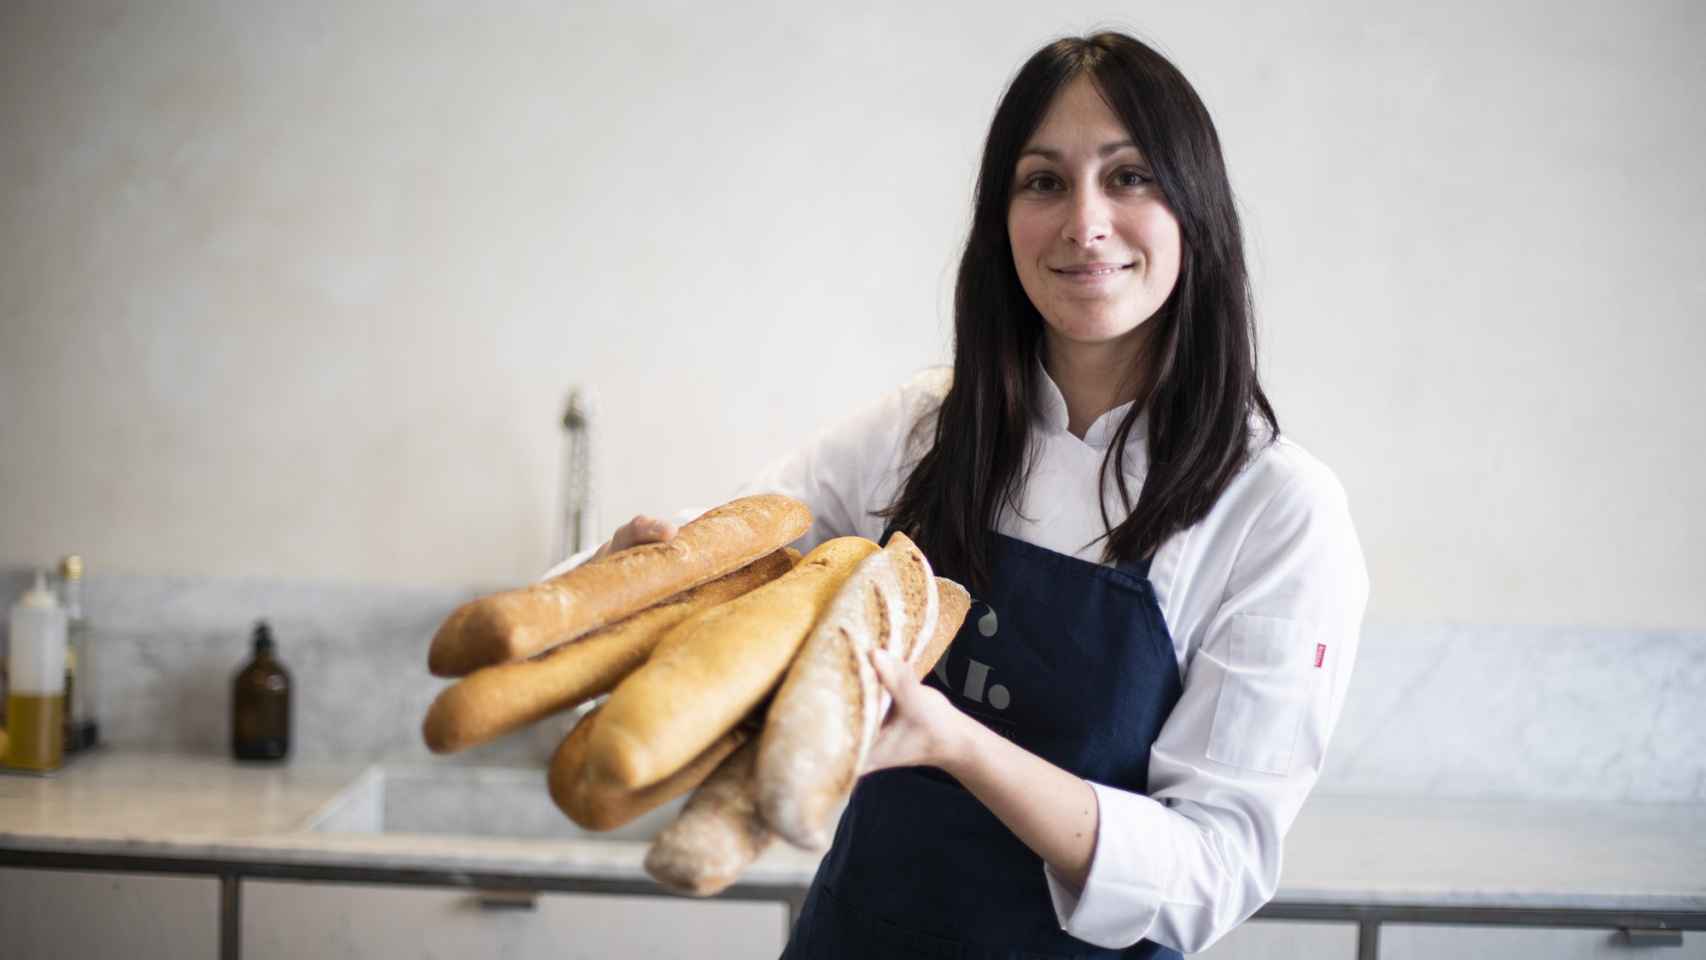 Los seis barras de pan integral probadas por Celia Mora-Rey, cocinera y profesora de la escuela El Gusto es nuestro.